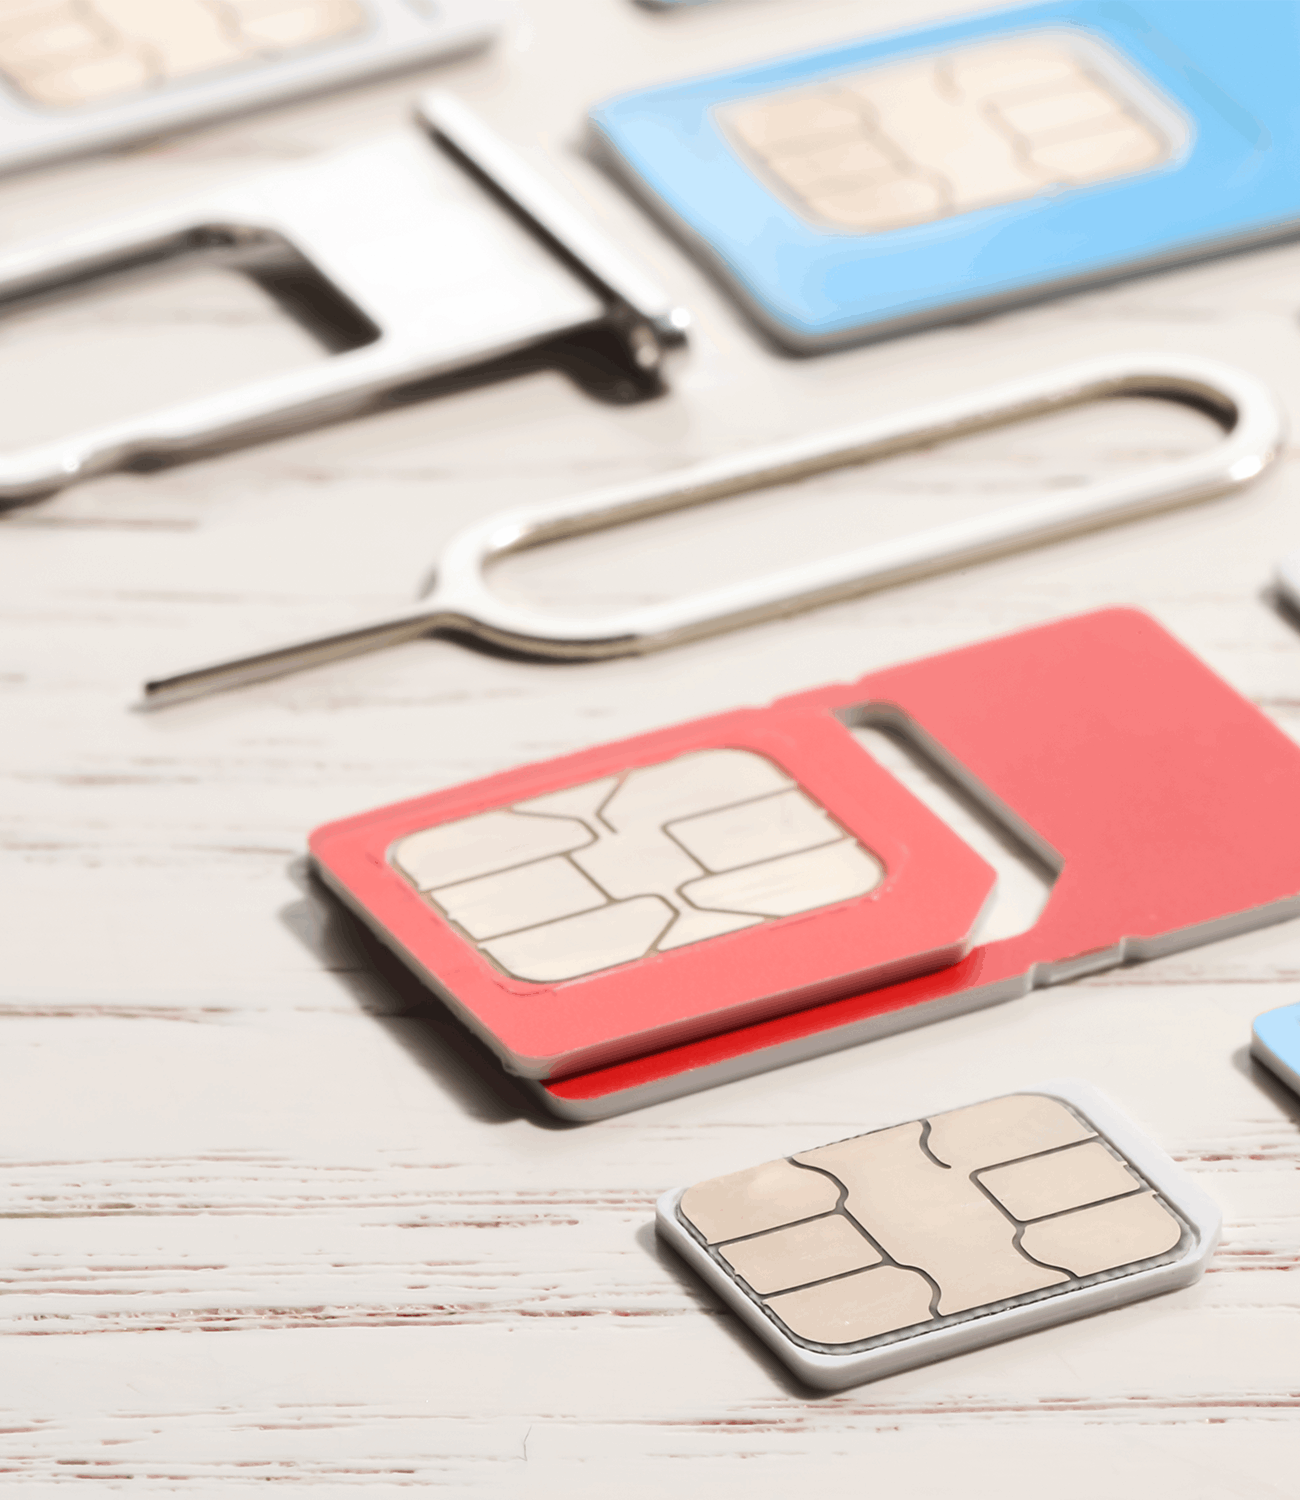 Data SIM Cards